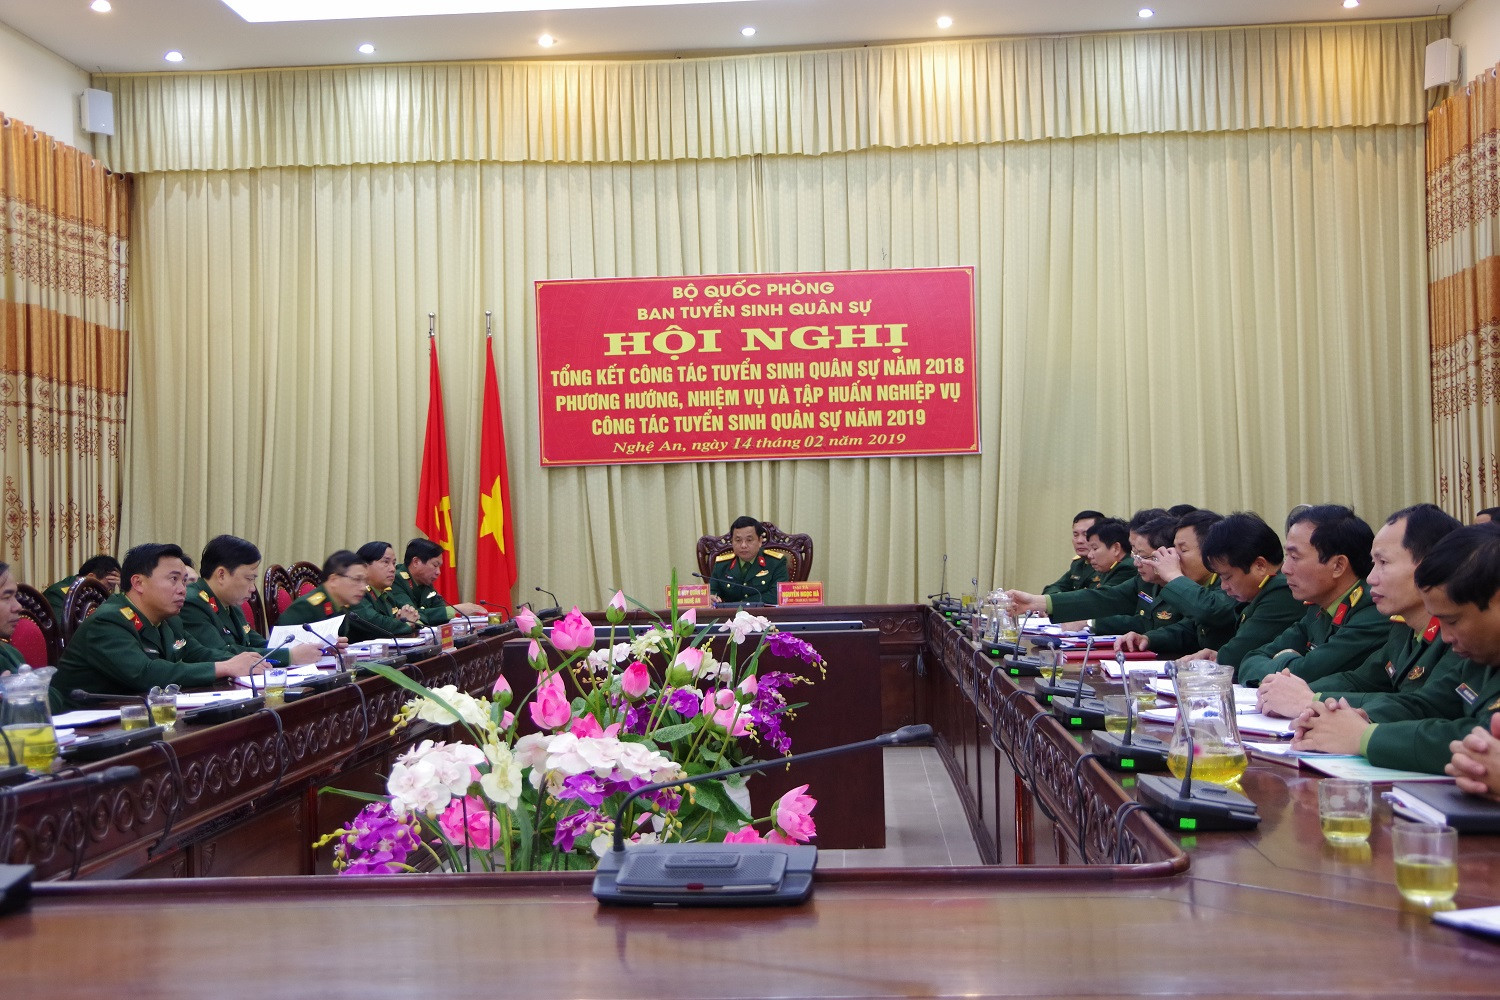 Quang cảnh hội nghị tại điểm cầu tỉnh Nghệ An (Trần Dũng)